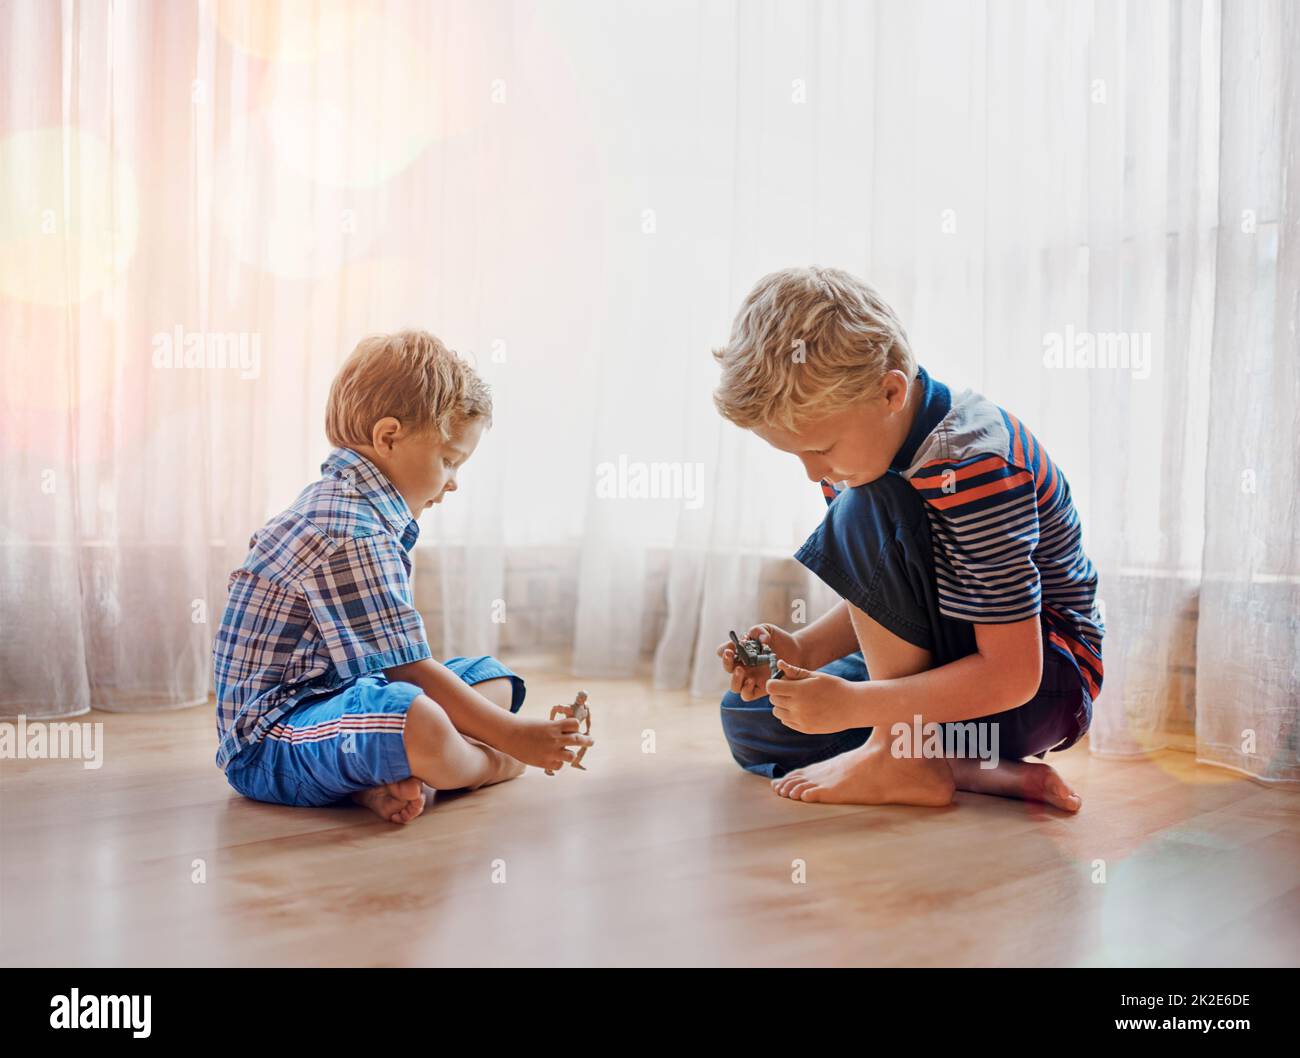 Lasst die Spiele beginnen. Aufnahme von zwei kleinen Jungen, die zu Hause zusammen spielen. Stockfoto